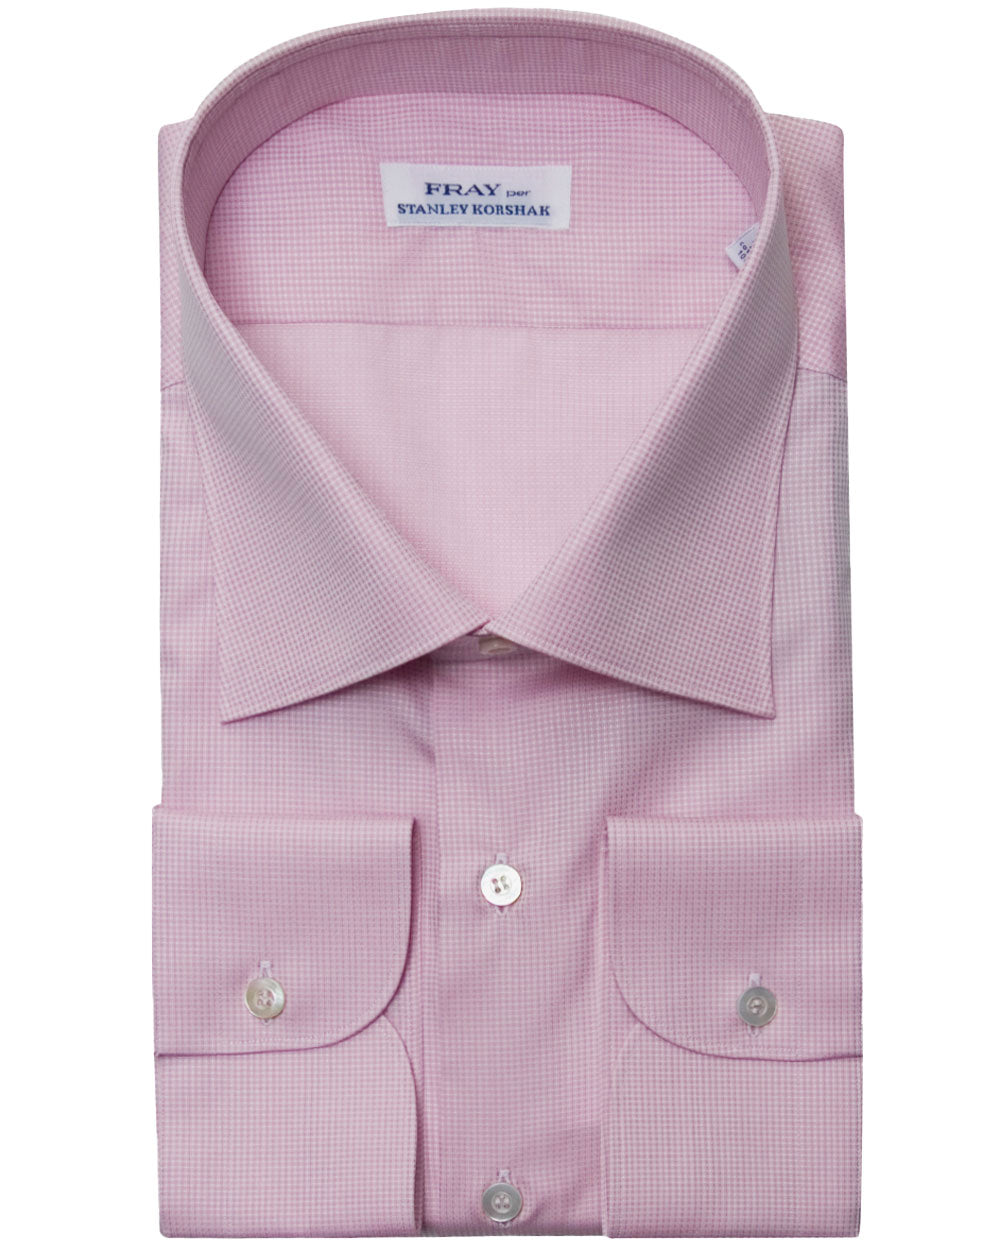 Pale Pink Textured Dress Shirt